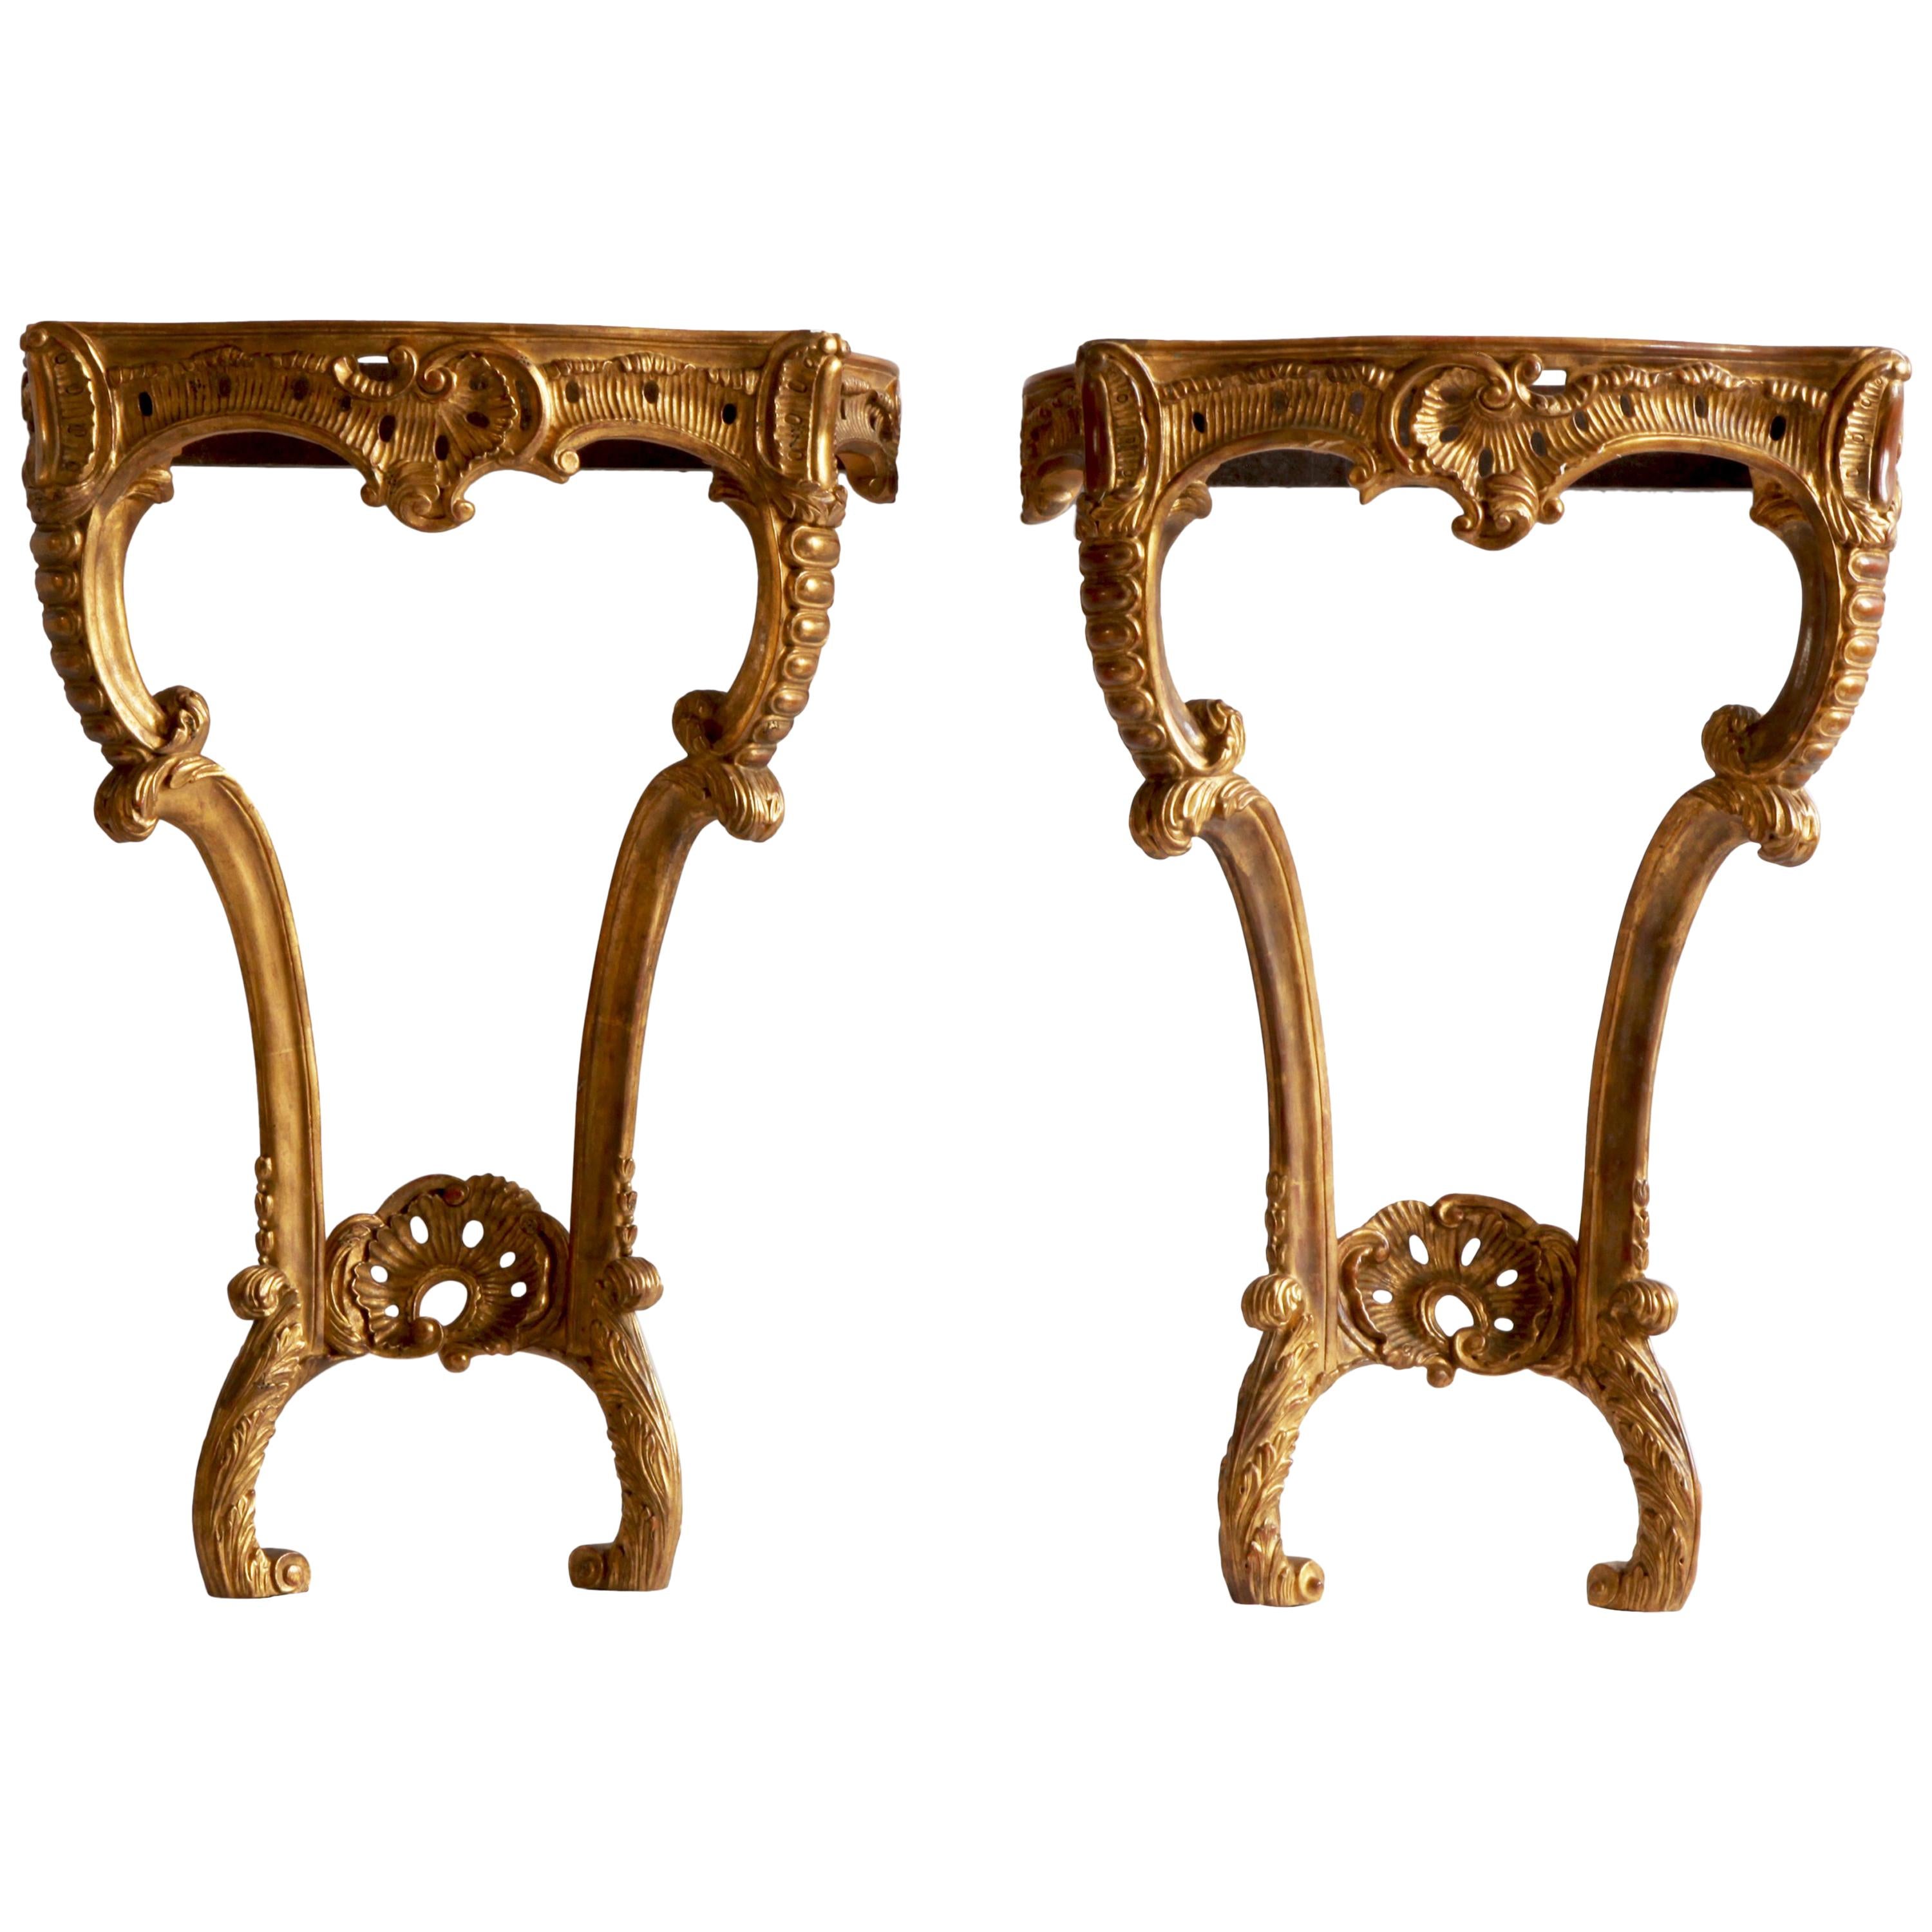 Paire de consoles de style rococo sculptées à la main en bois doré, fabriquées par La Maison London